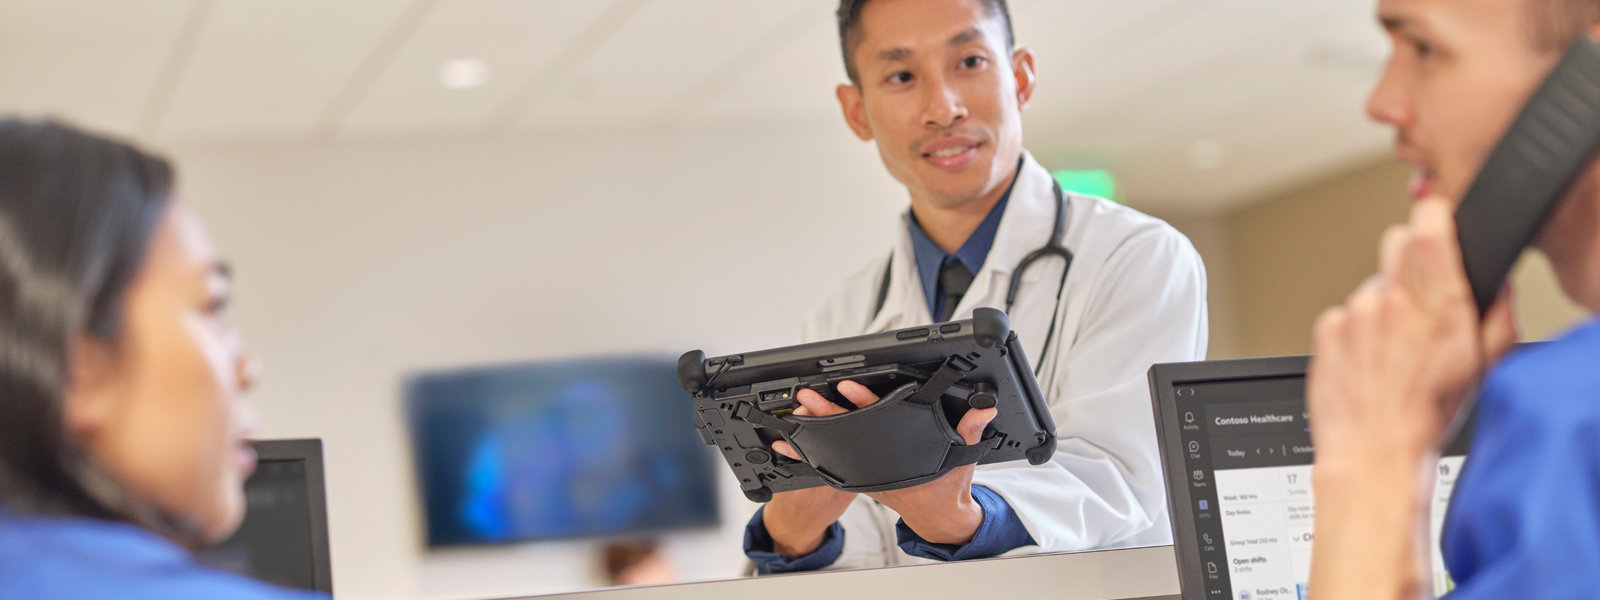 แพทย์ถือ Surface Pro ขณะพูดคุยกับพยาบาลสองคน